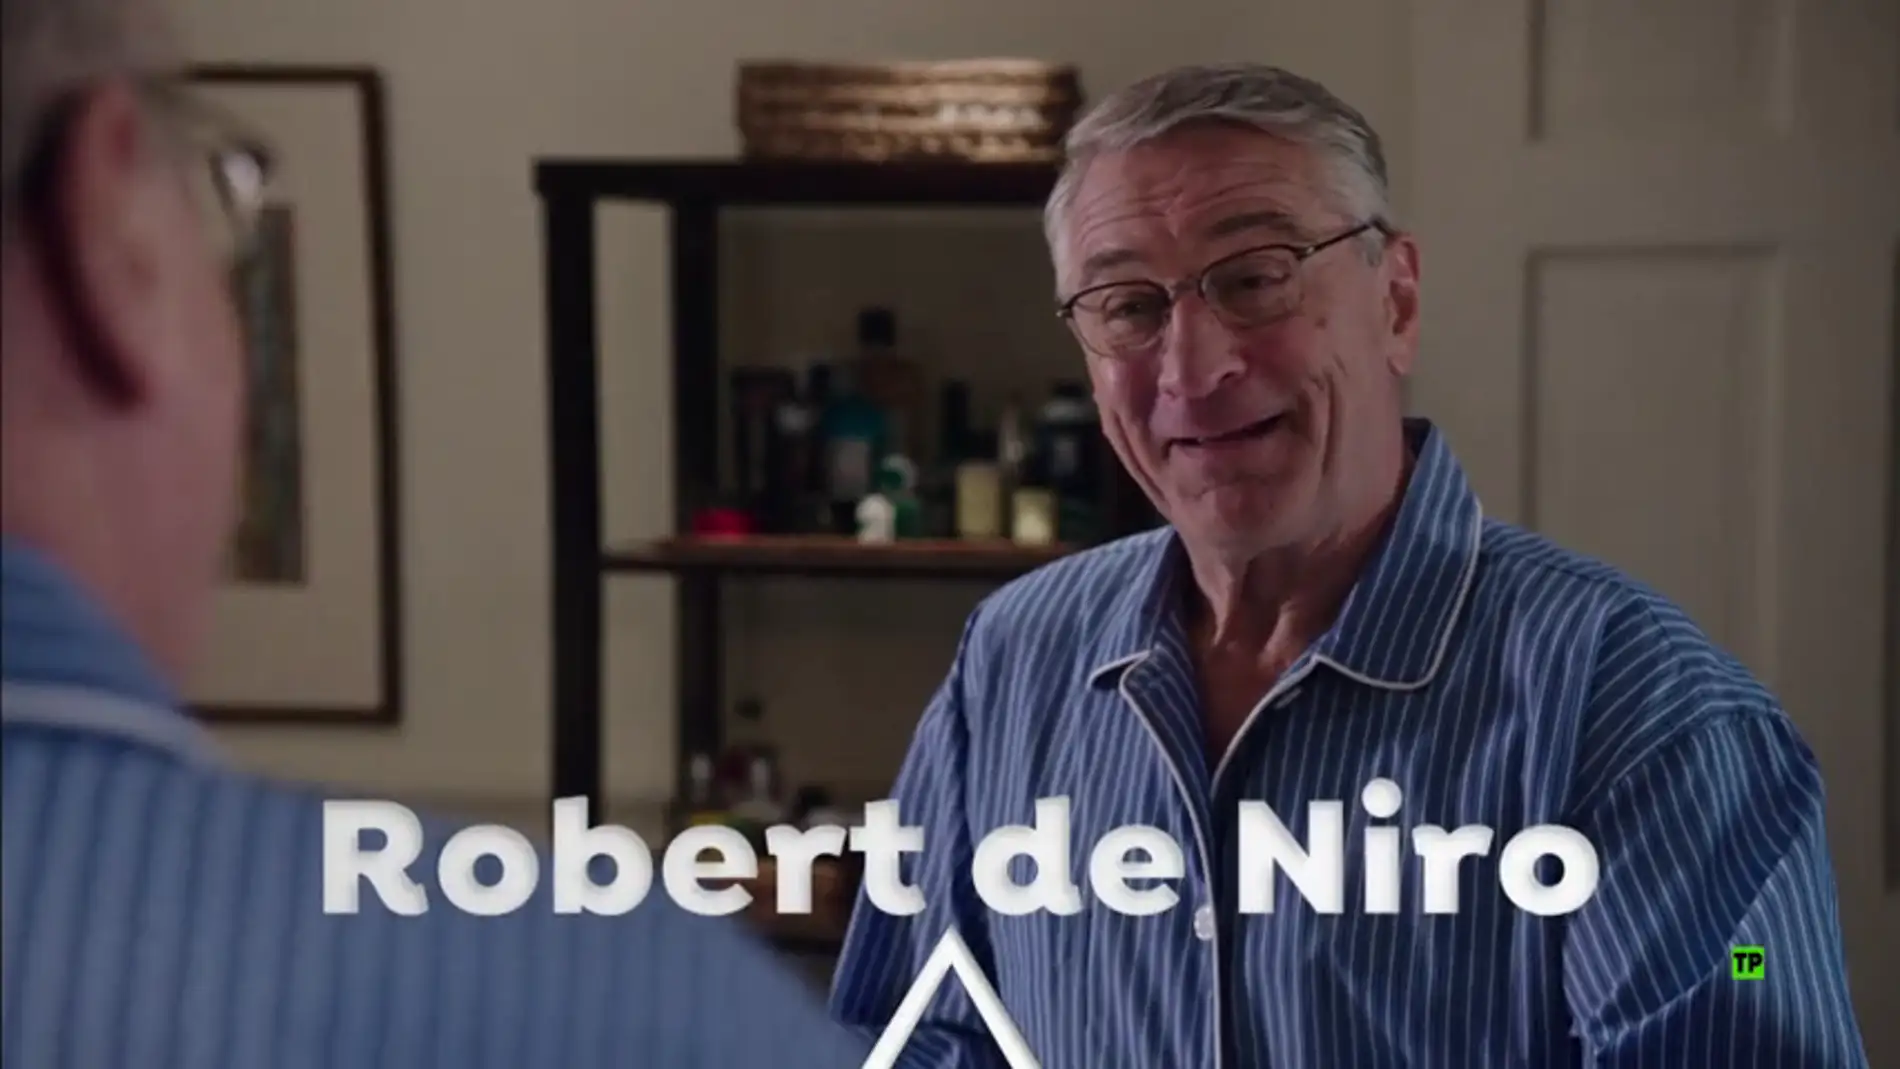 El Peliculón de Antena 3 estrena 'El Becario' con Robert De Niro